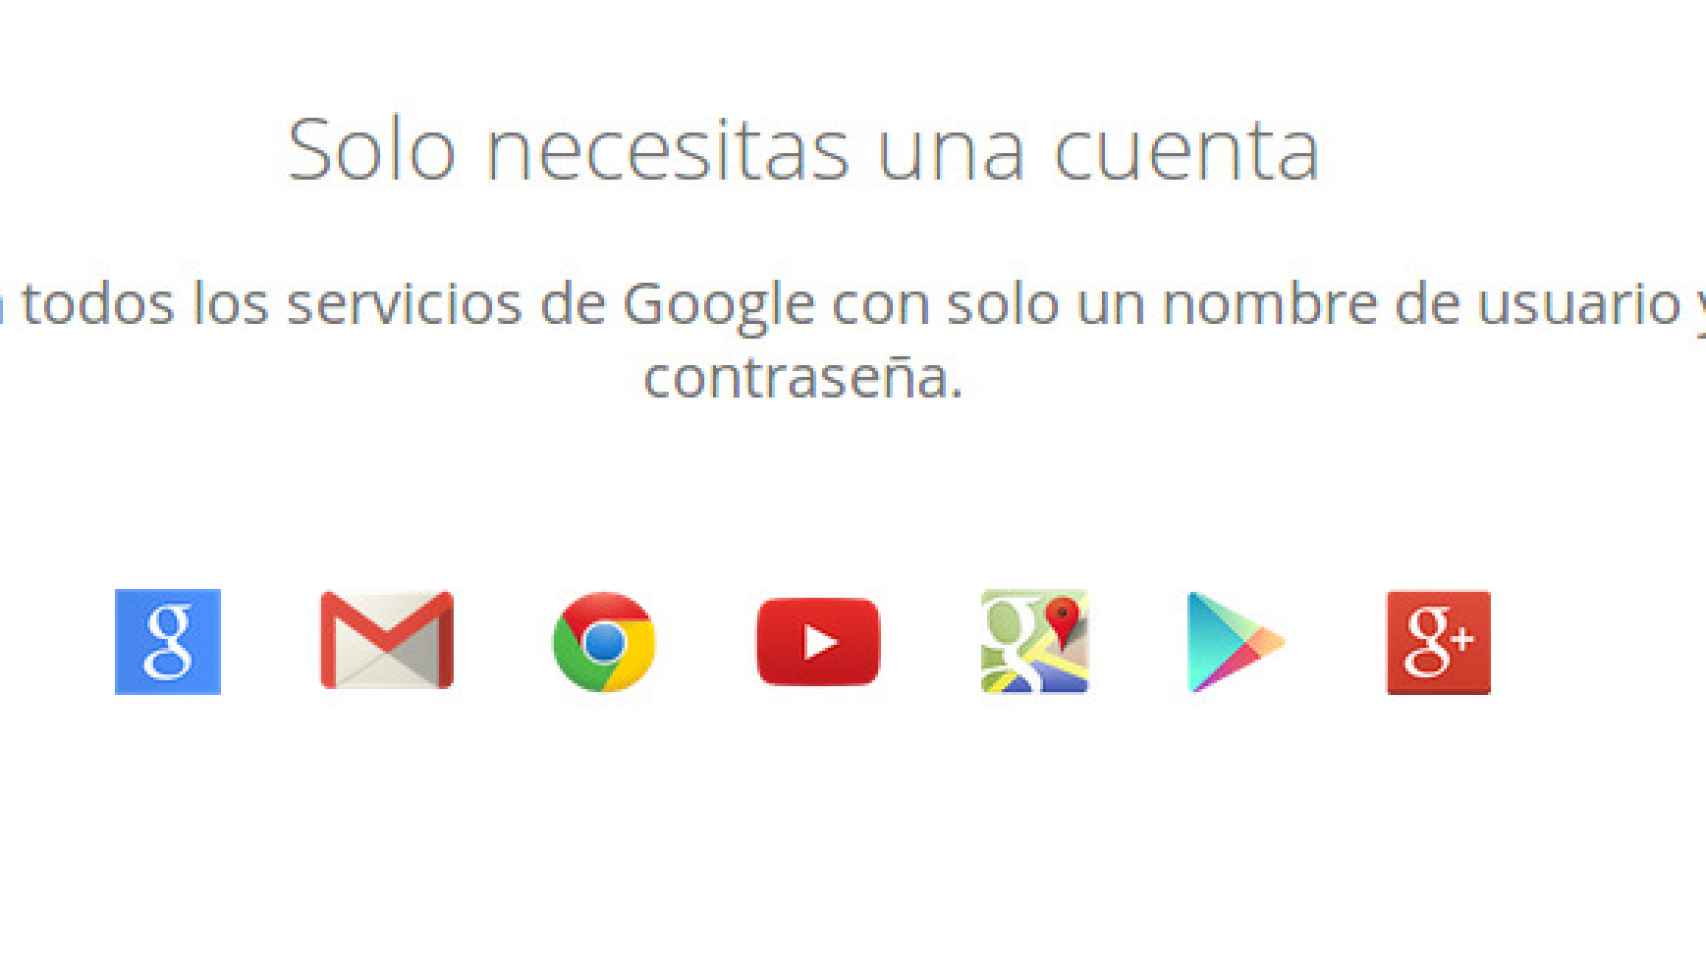 ¿Se pueden usar todos los servicios de Google en Android sin una cuenta de GMail?